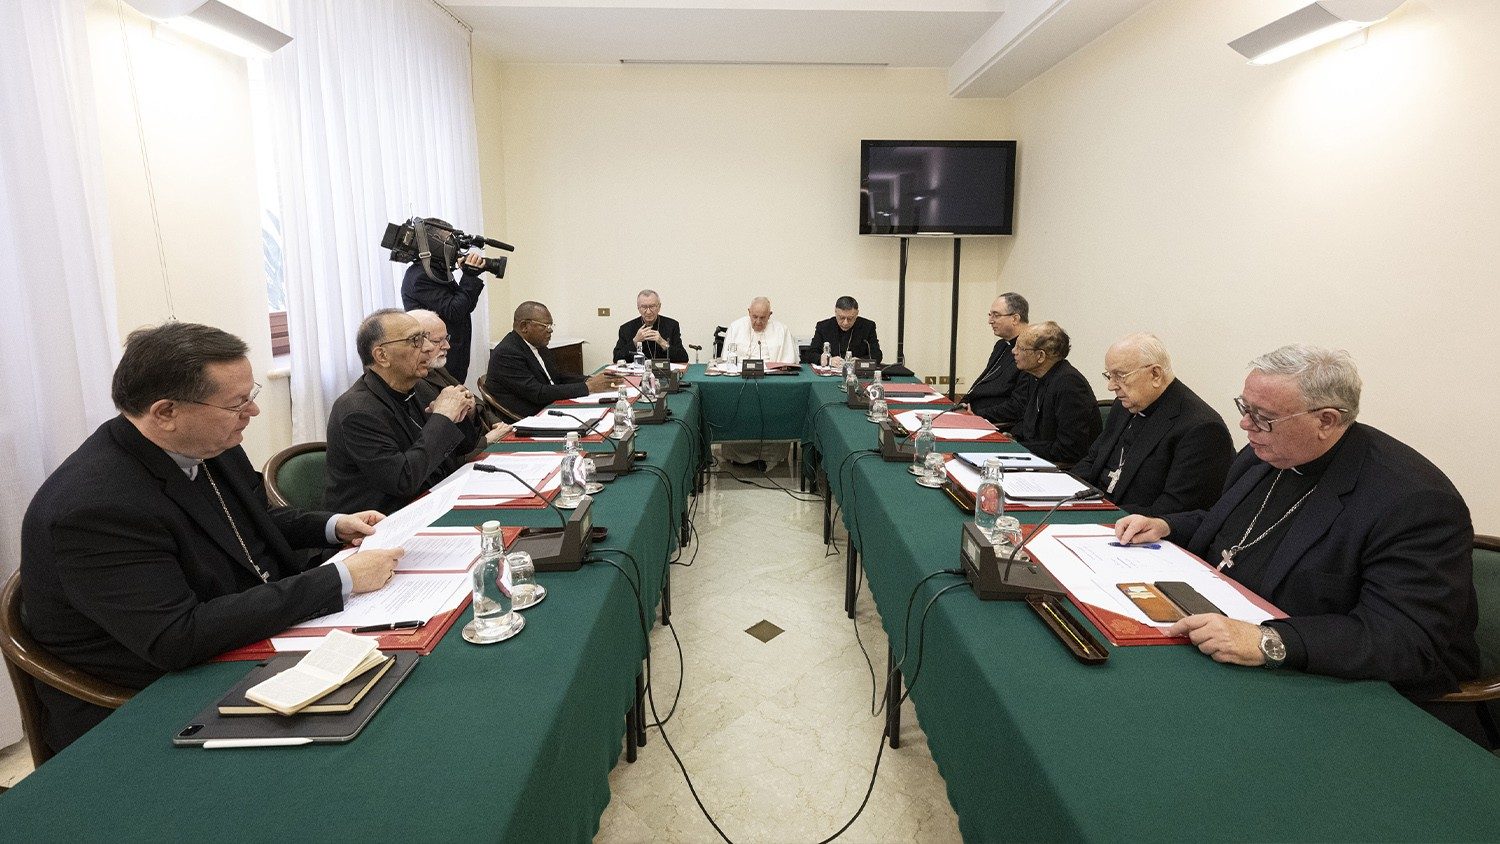 Hội đồng Hồng y cố vấn chú trọng đến việc toàn thể Giáo hội cần hợp tác xây dựng hòa bình